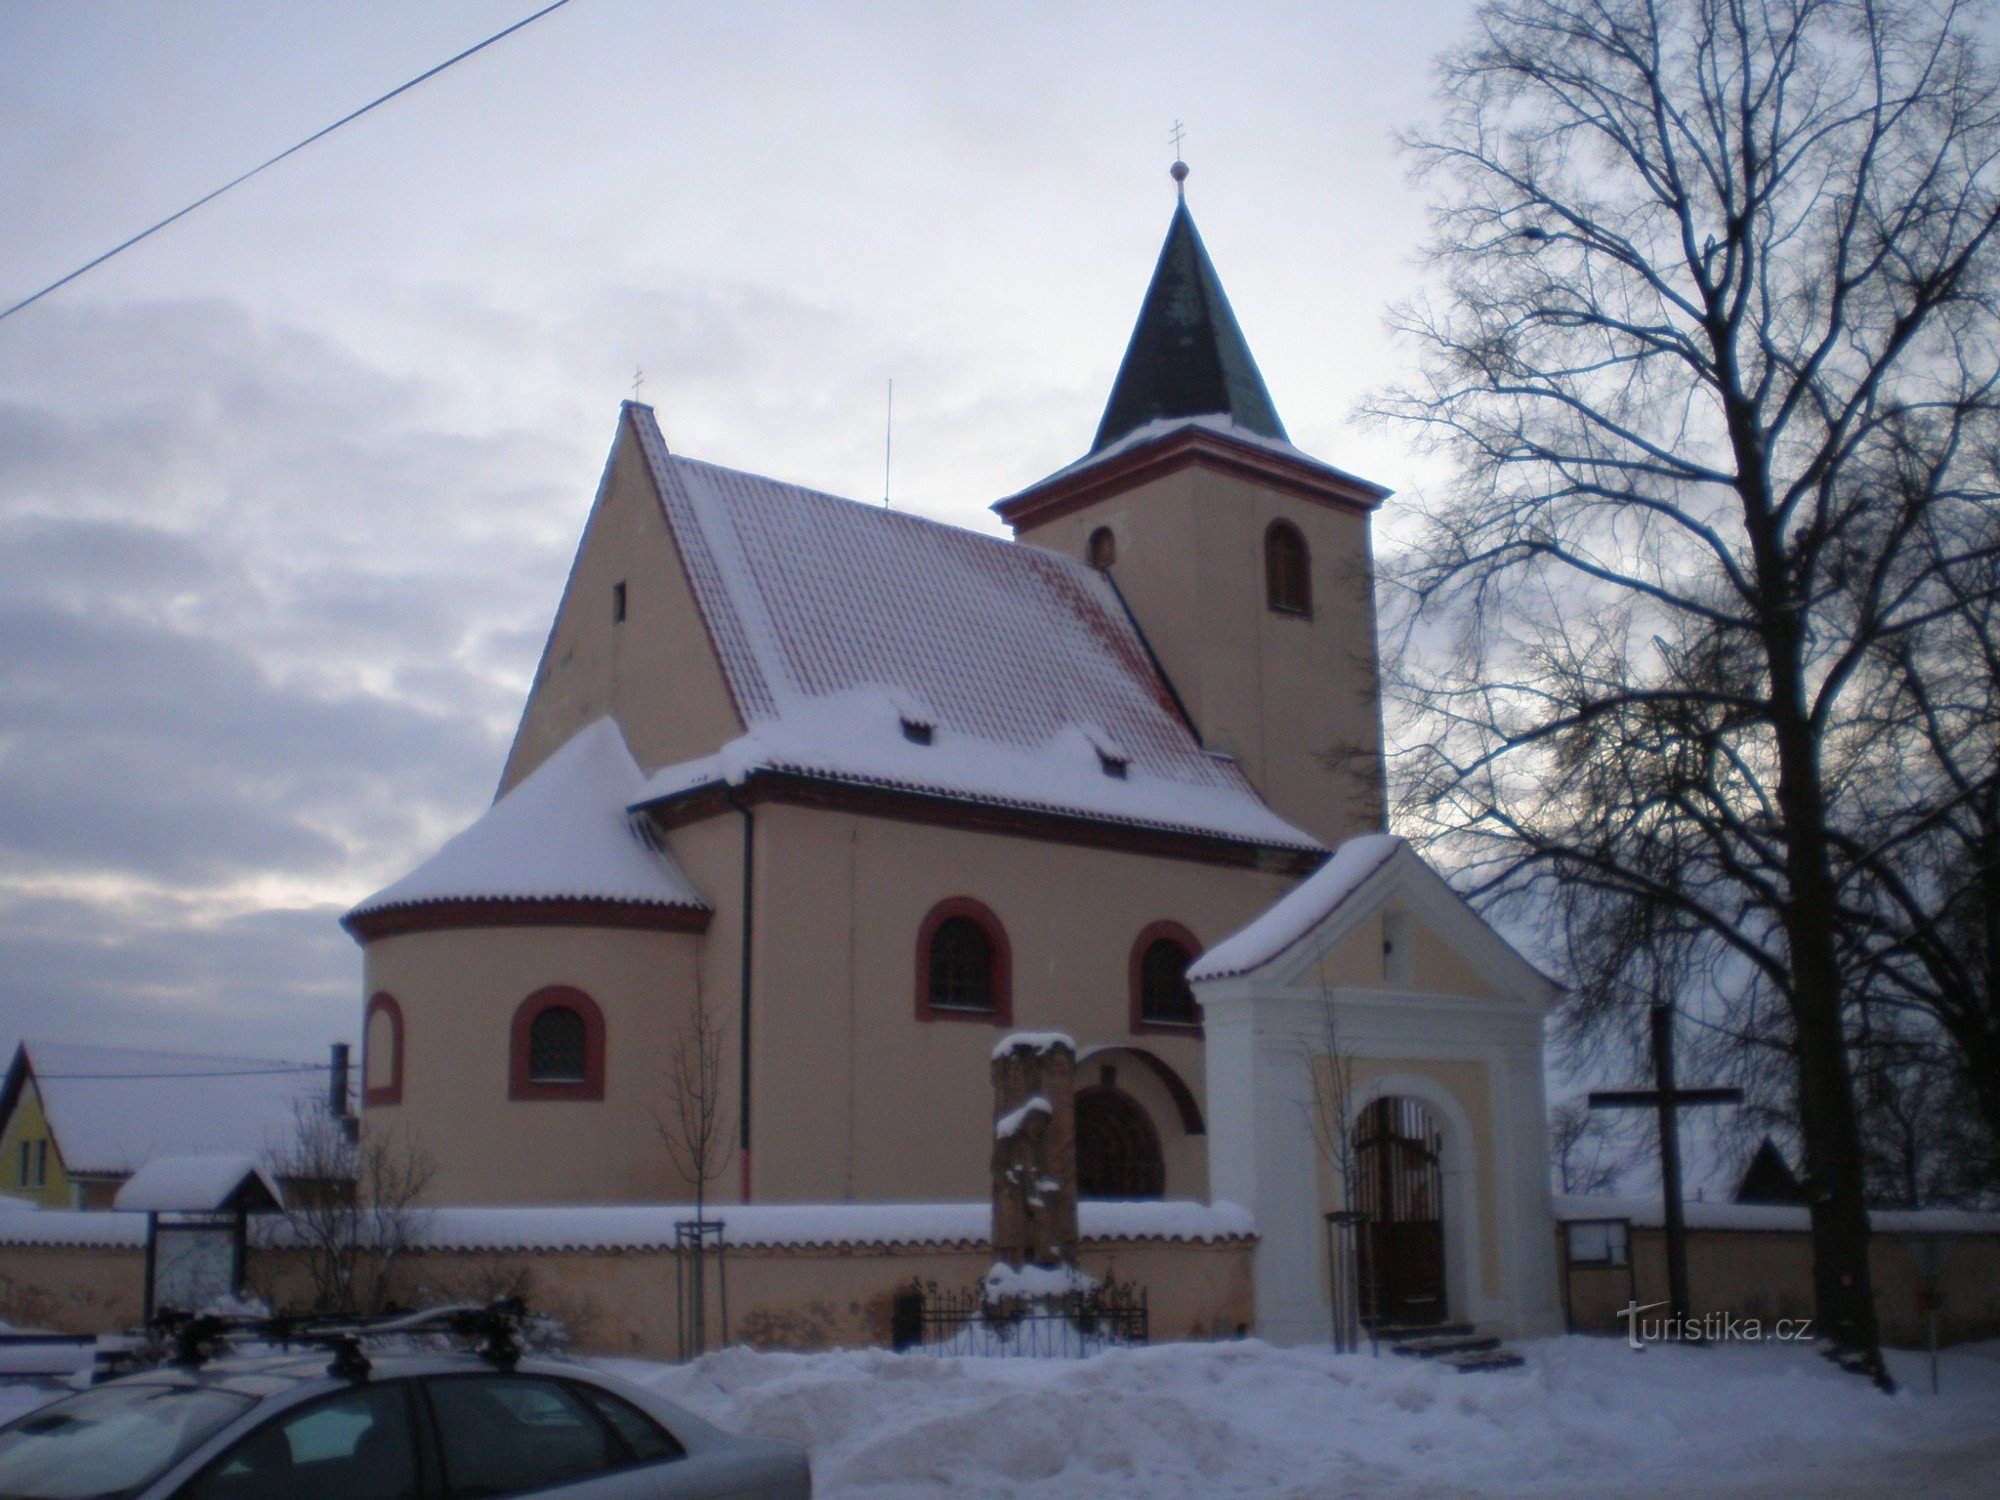 Hrusice - Pyhän Nikolauksen kirkko Wenceslas